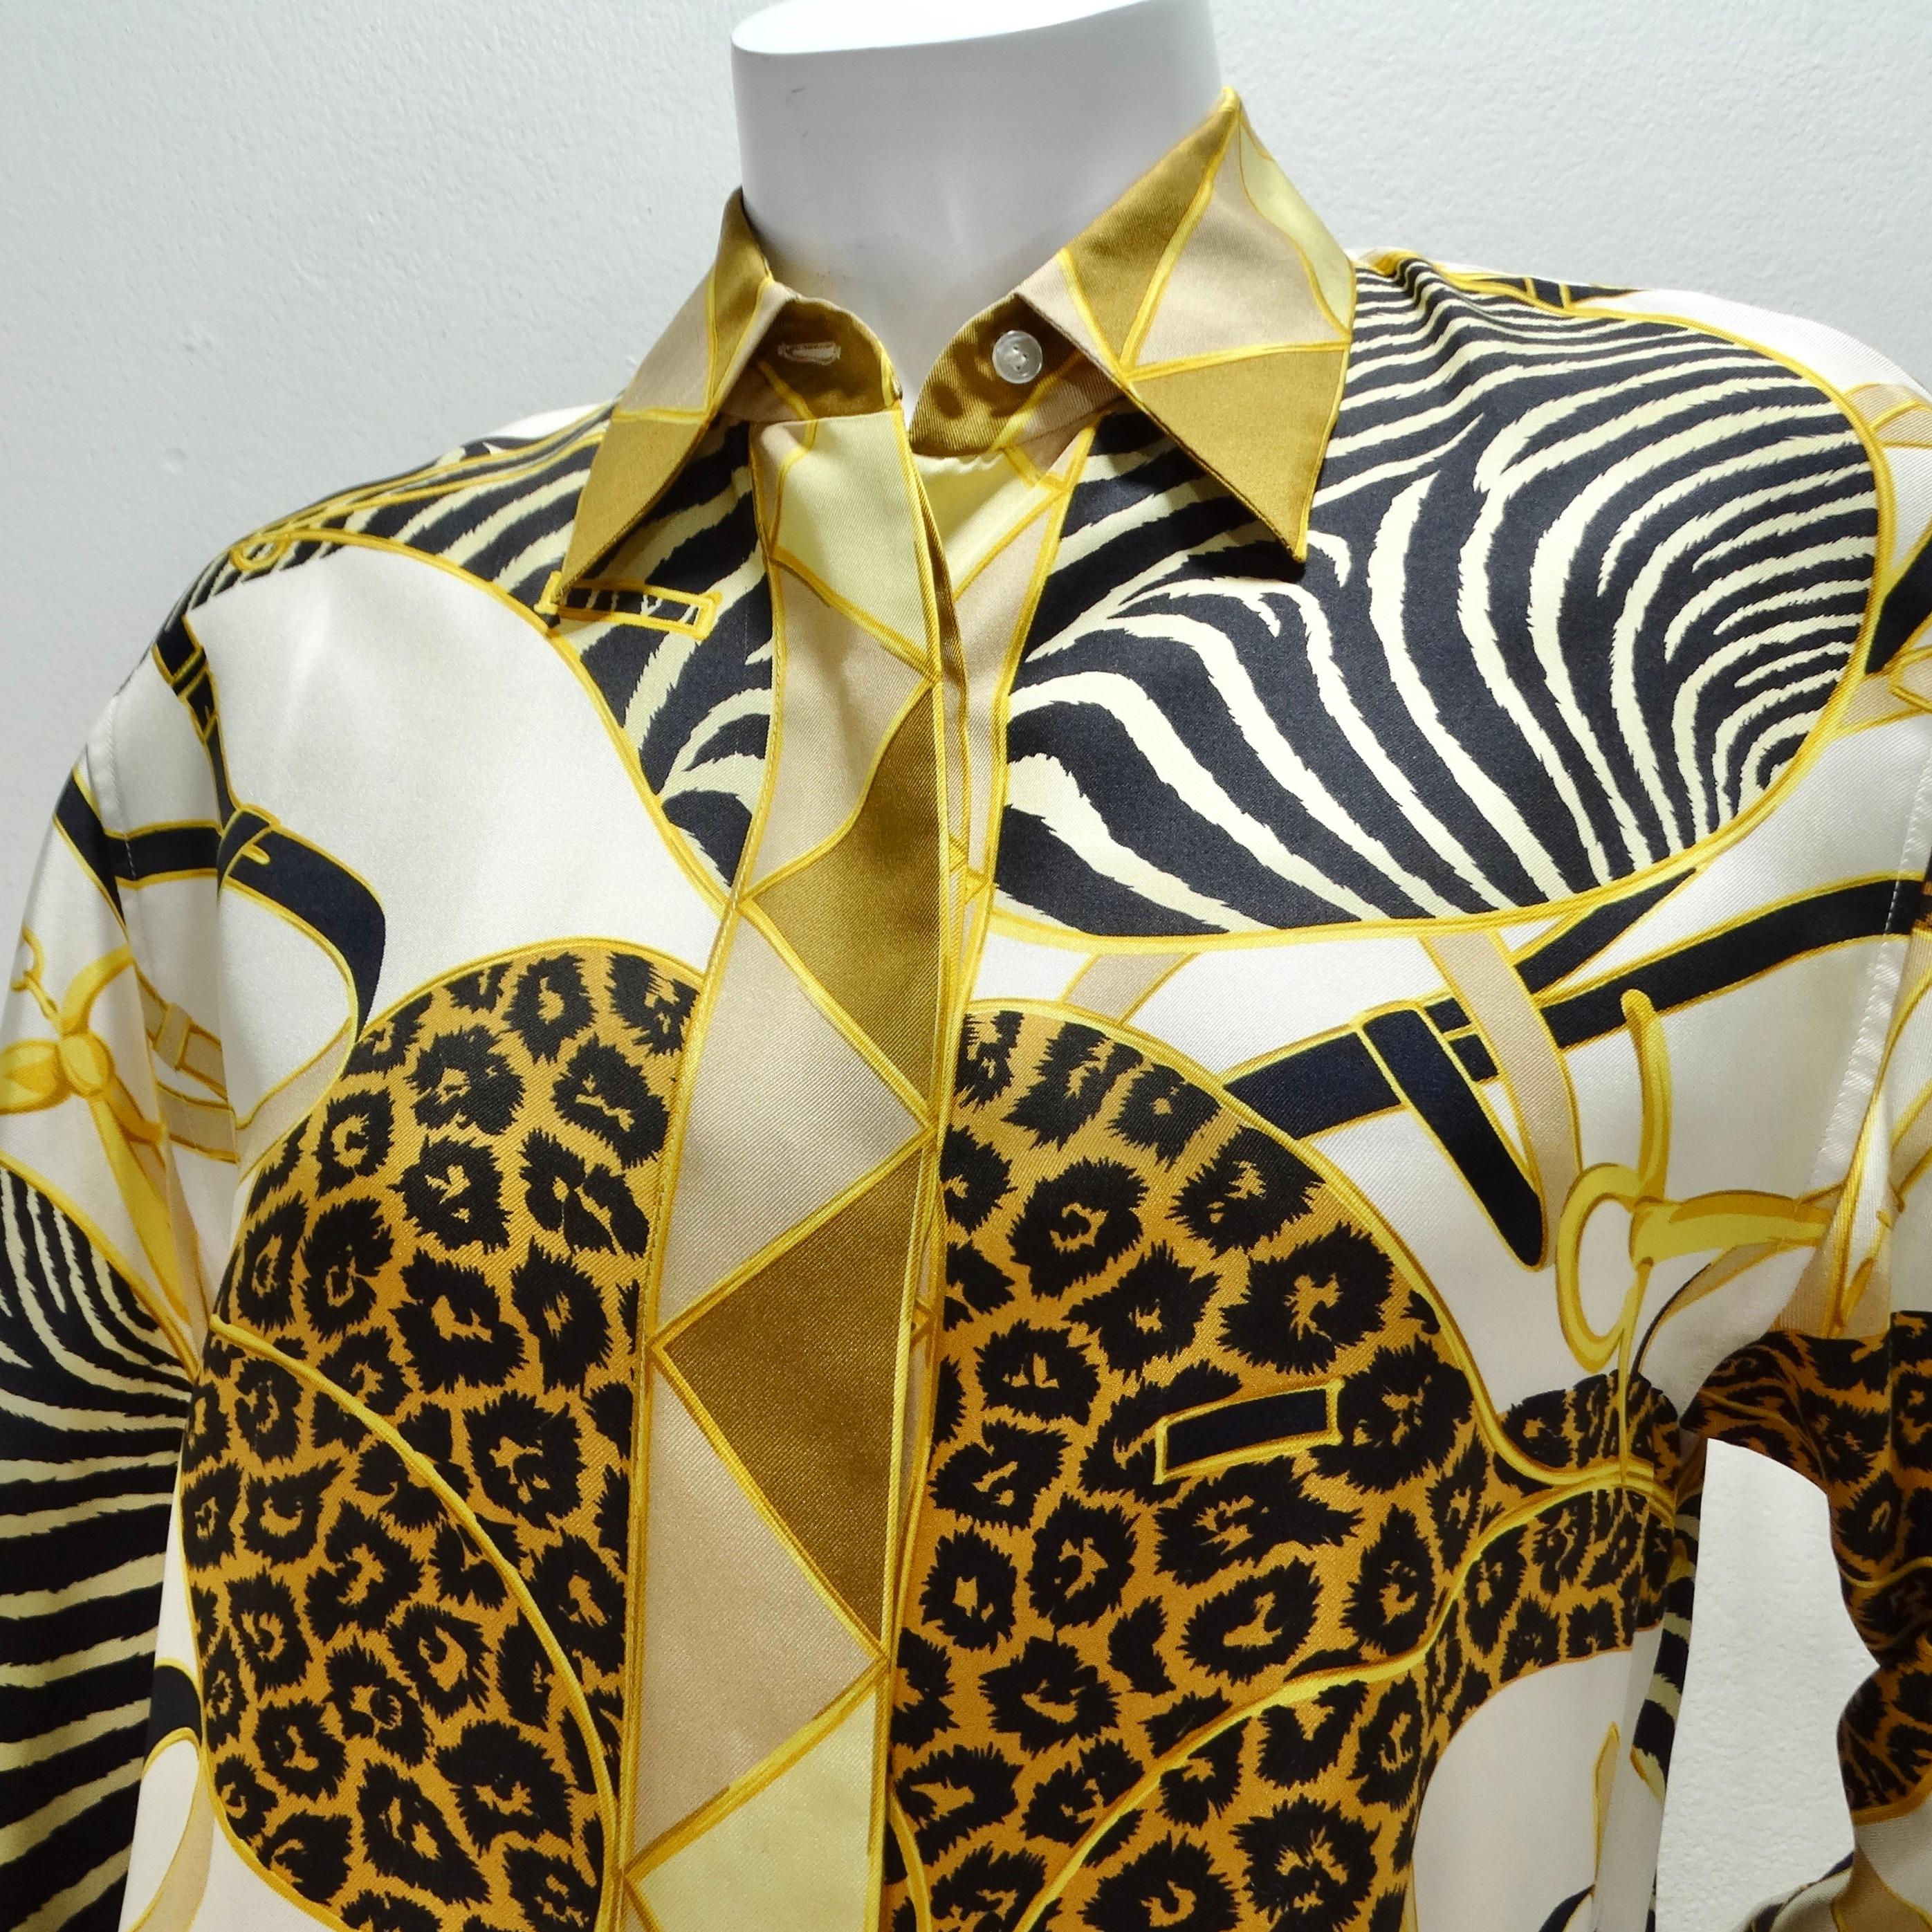 Rehaussez votre garde-robe avec la sophistication intemporelle de cette chemise boutonnée en soie imprimée Gucci 1990. Confectionnée dans une luxueuse soie à 100 %, cette chemise à col classique respire le luxe et le raffinement.

La chemise